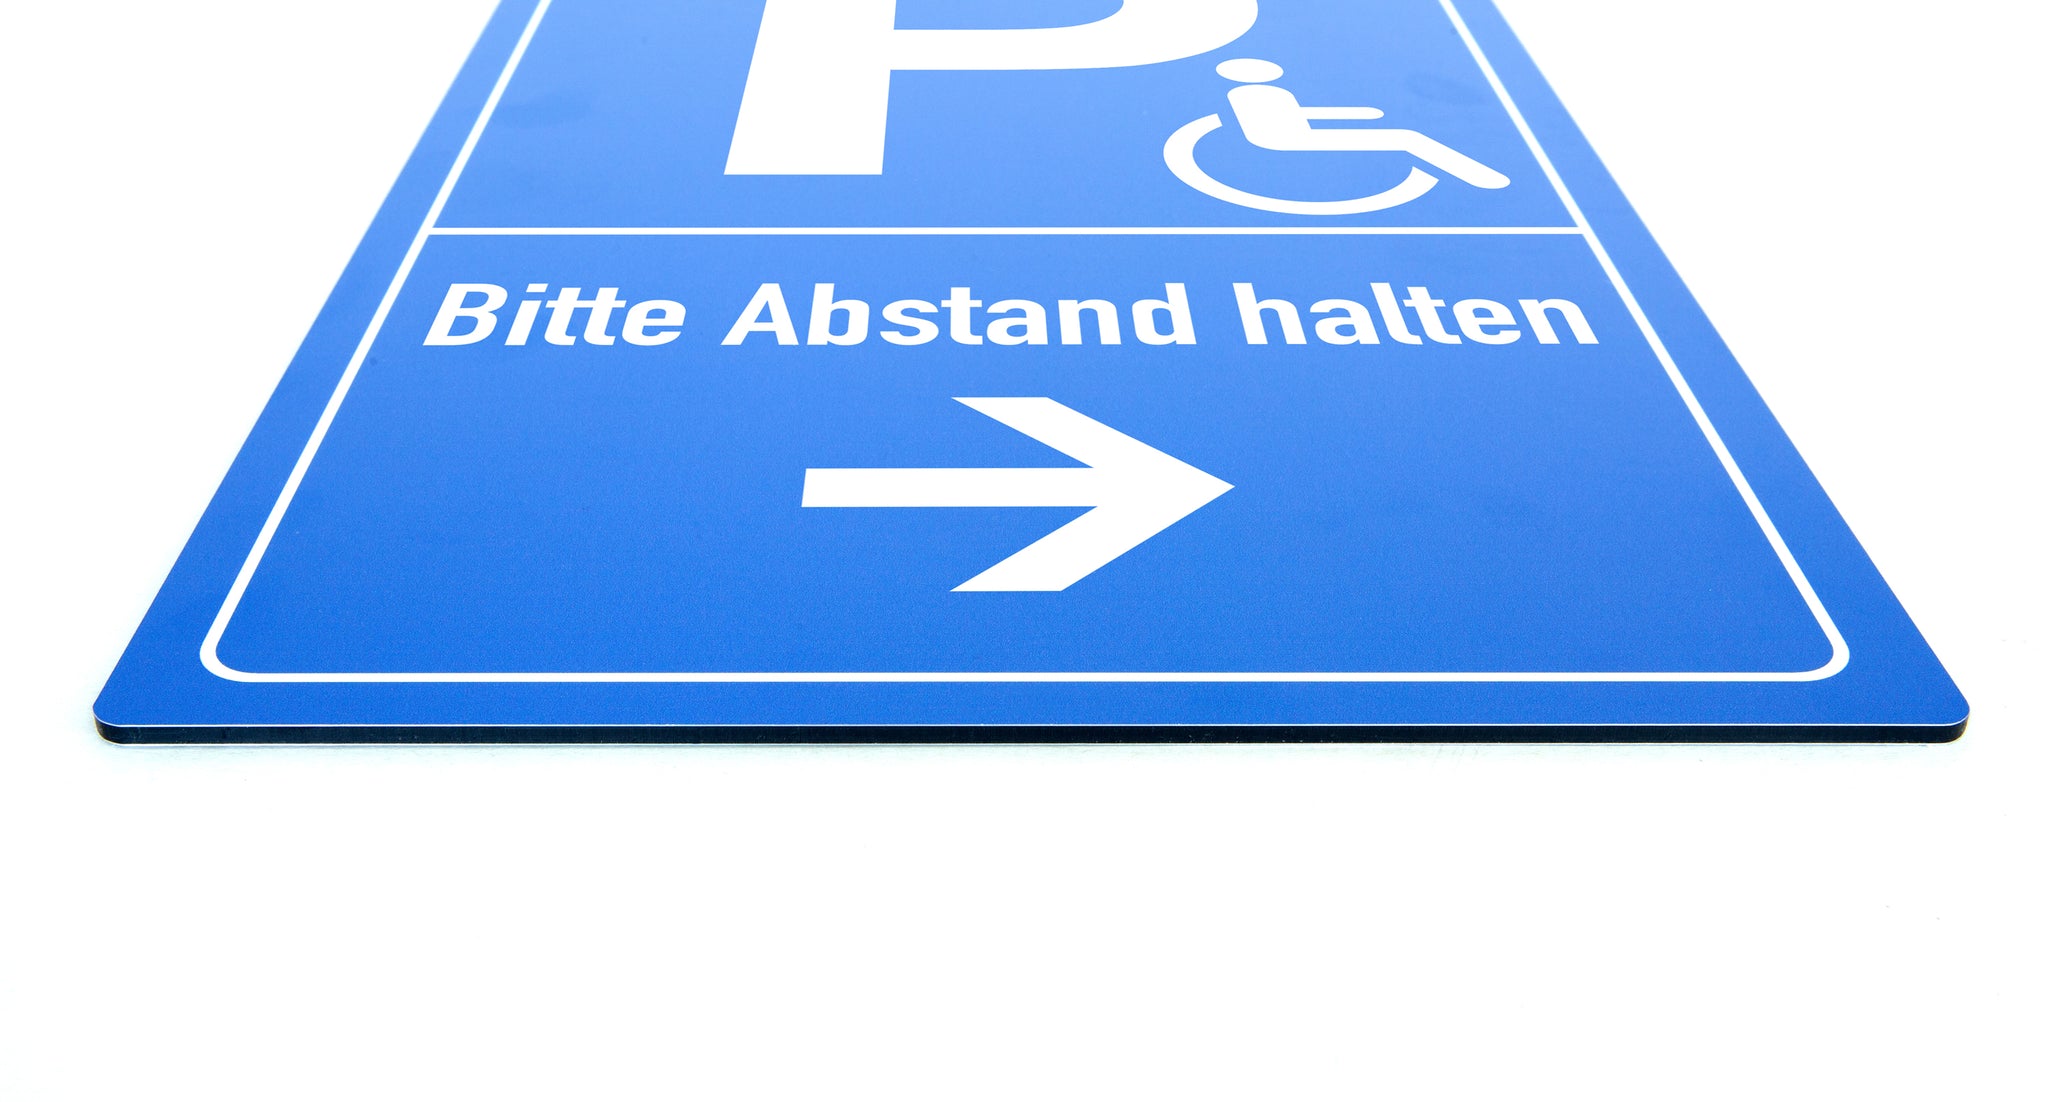 Halten auf einem Behindertenparkplatz: Ist das erlaubt?